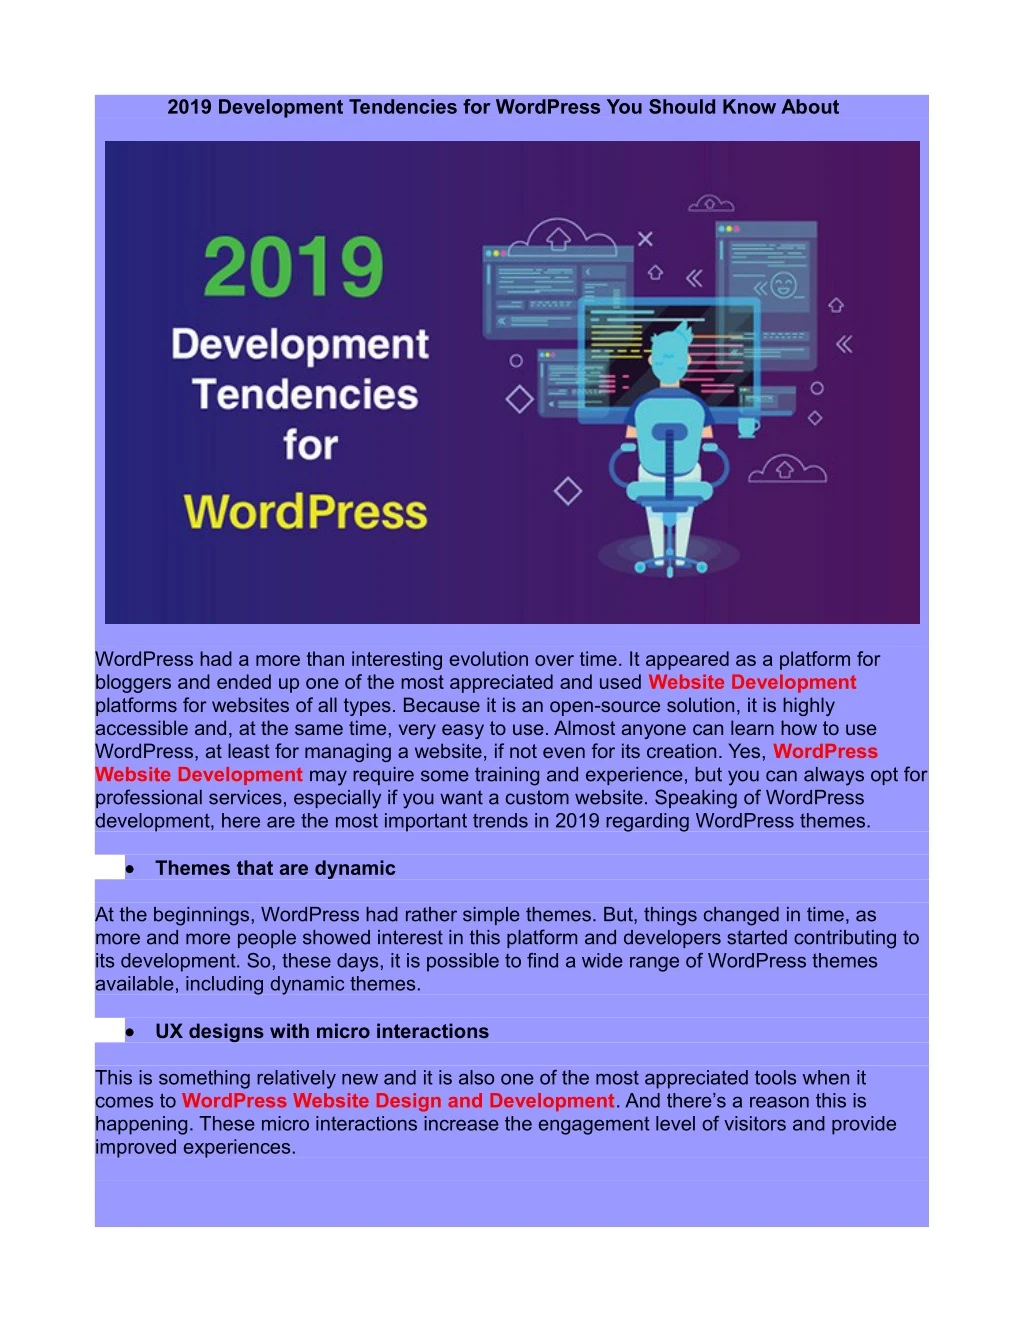 2019 development tendencies for wordpress